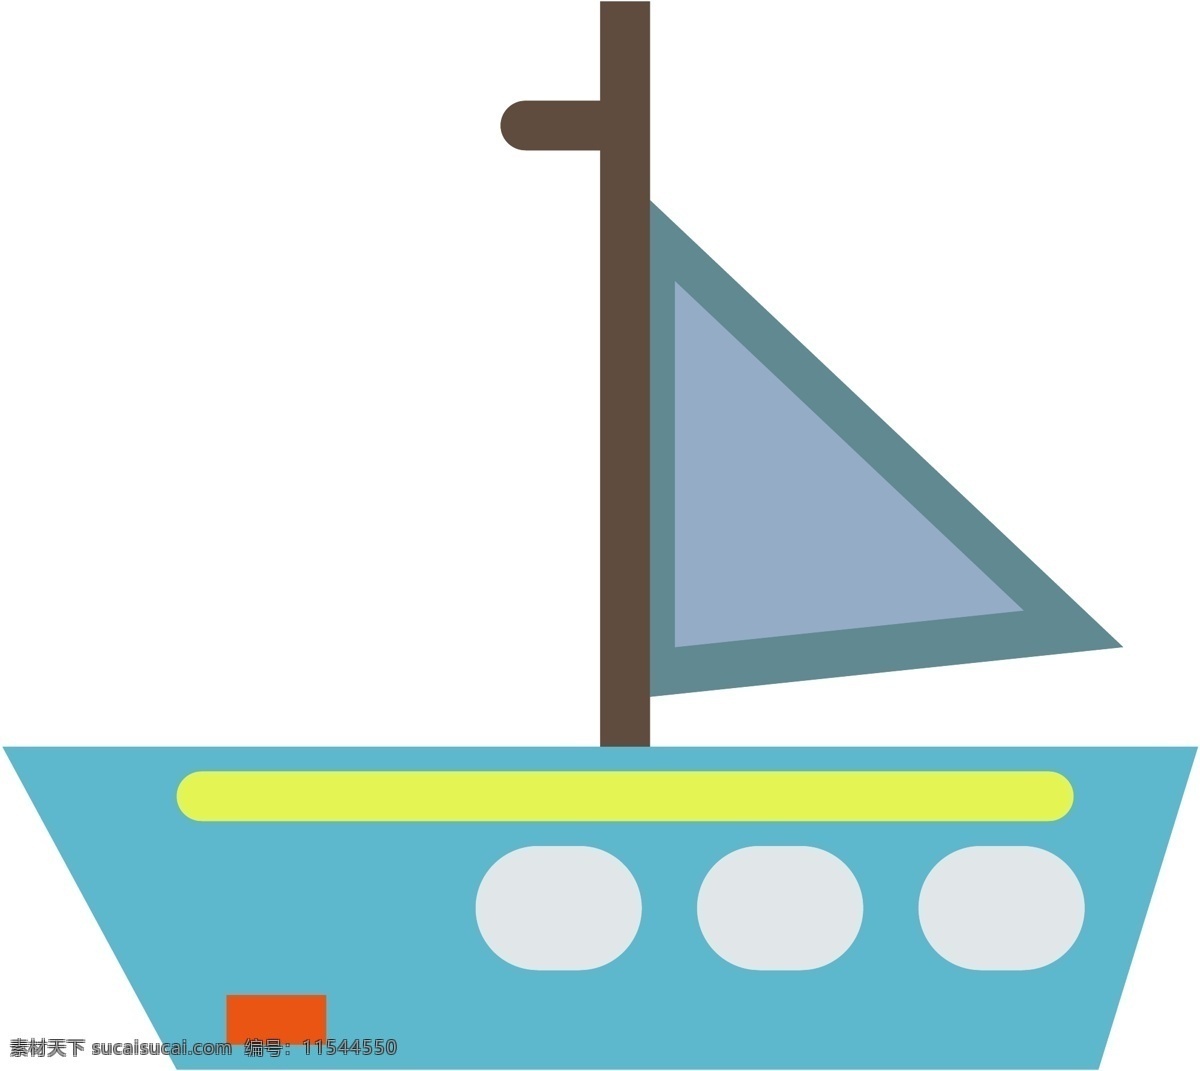 卡通 玩具 轮船 矢量图 游轮 旅游 旅行 坐船 船 卡通船 海边 旅行船 游艇 可爱 小清新风格